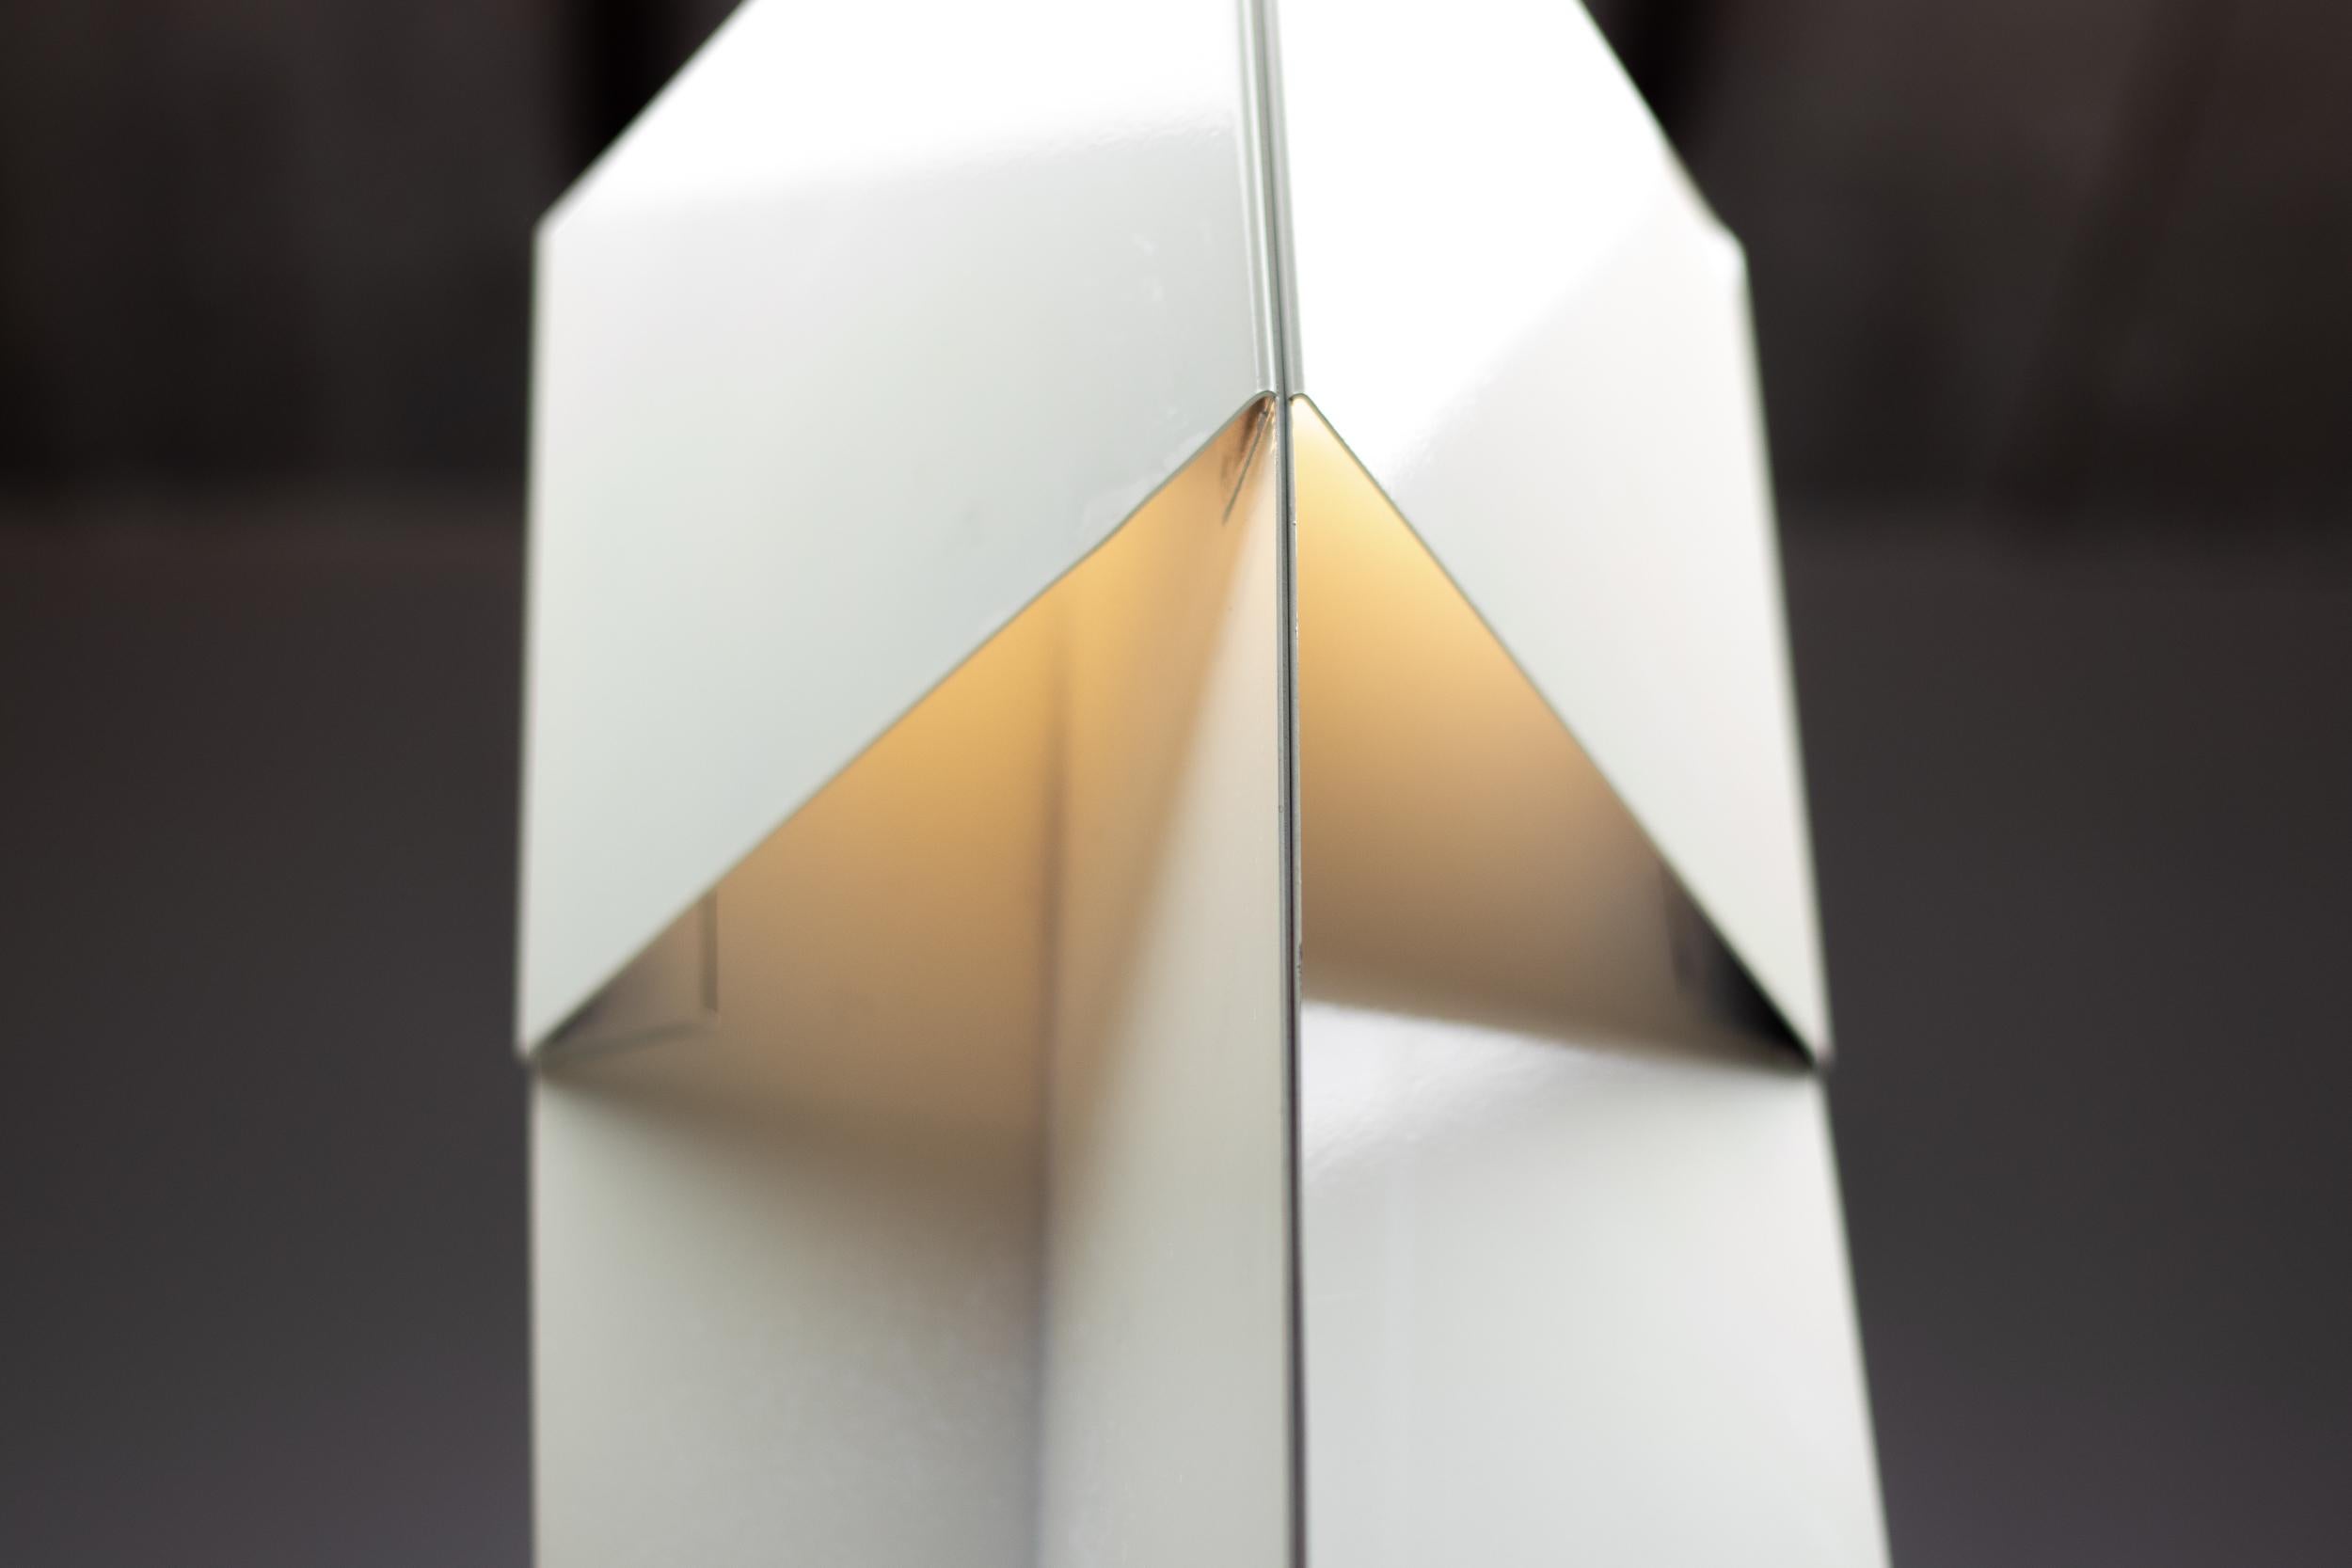 Lampadaire sculptural en tôle torsadée conçu par Mart Van Schijndel pour Martech, vers 1970. 
Allumeur avec ampoule halogène. Peut également être utilisé avec une ampoule LED.
La forme torsadée complexe crée un jeu dramatique d'ombres et de